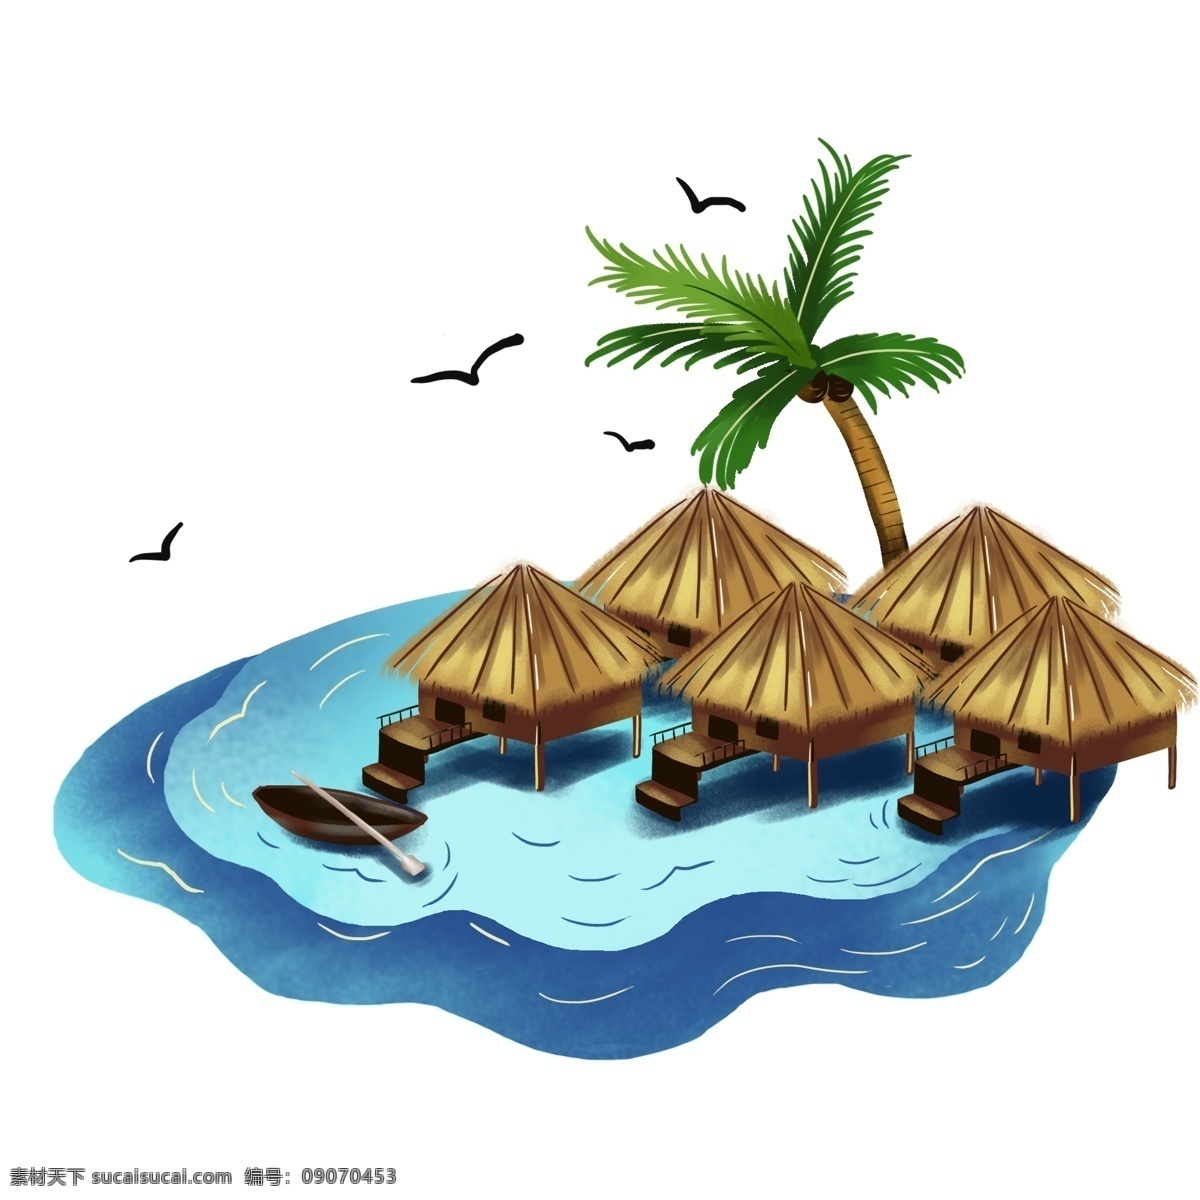 中国旅游 日 浪漫 马尔代夫 手绘 元素 中国旅游日 度假胜地 度假 假期 旅游 蜜月 海边 大海 船 海鸥 椰树 美